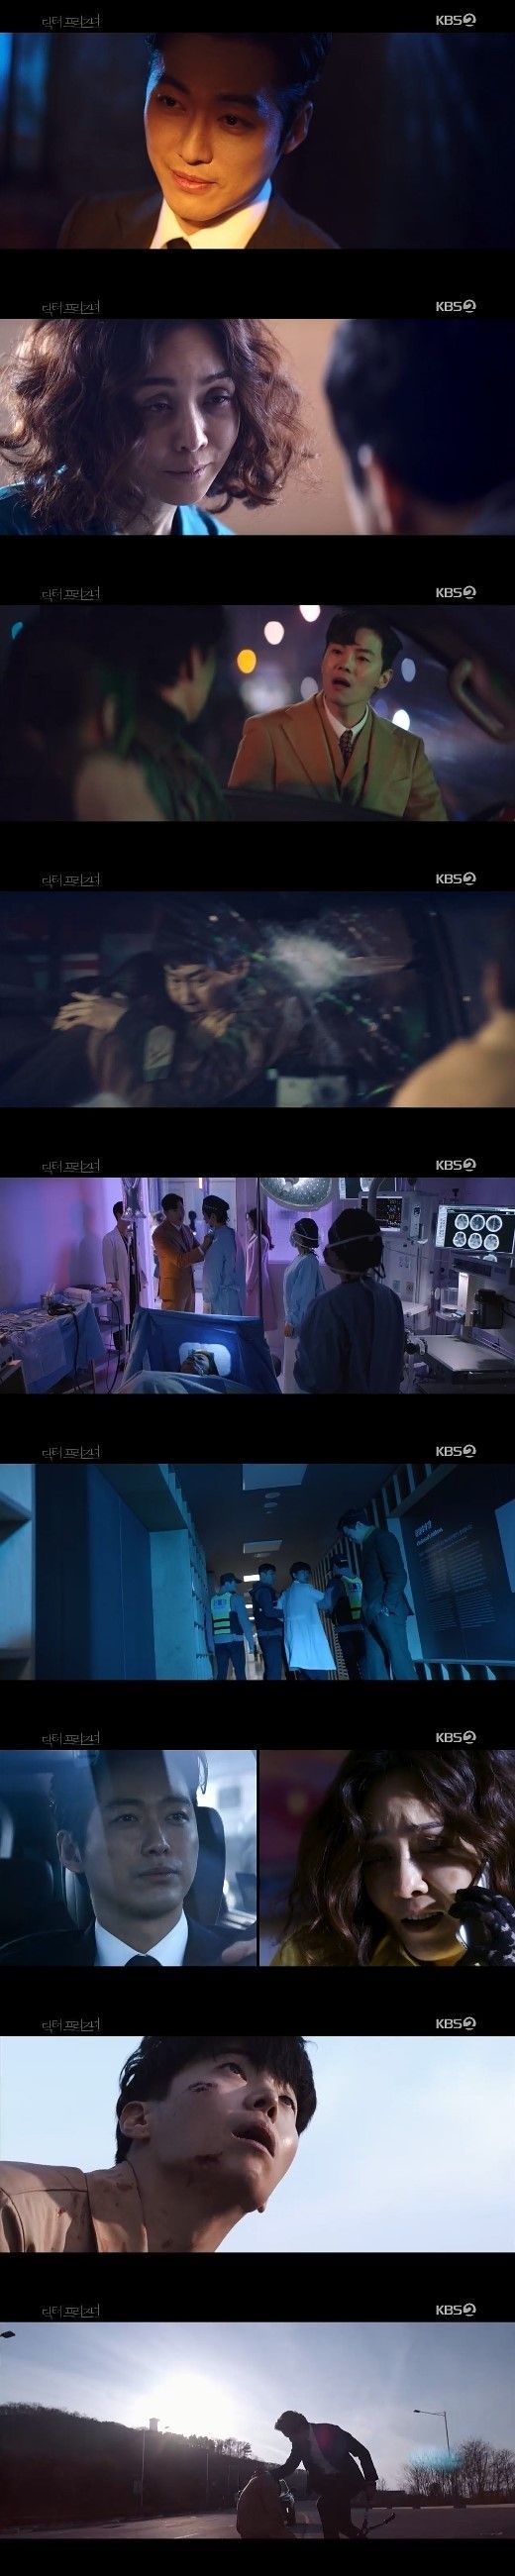 20일 방송된 '닥터 프리즈너'에는 배우 김정난과 남궁민의 만남이 그려졌다/사진=KBS2 '닥터 프리즈너' 화면 캡처